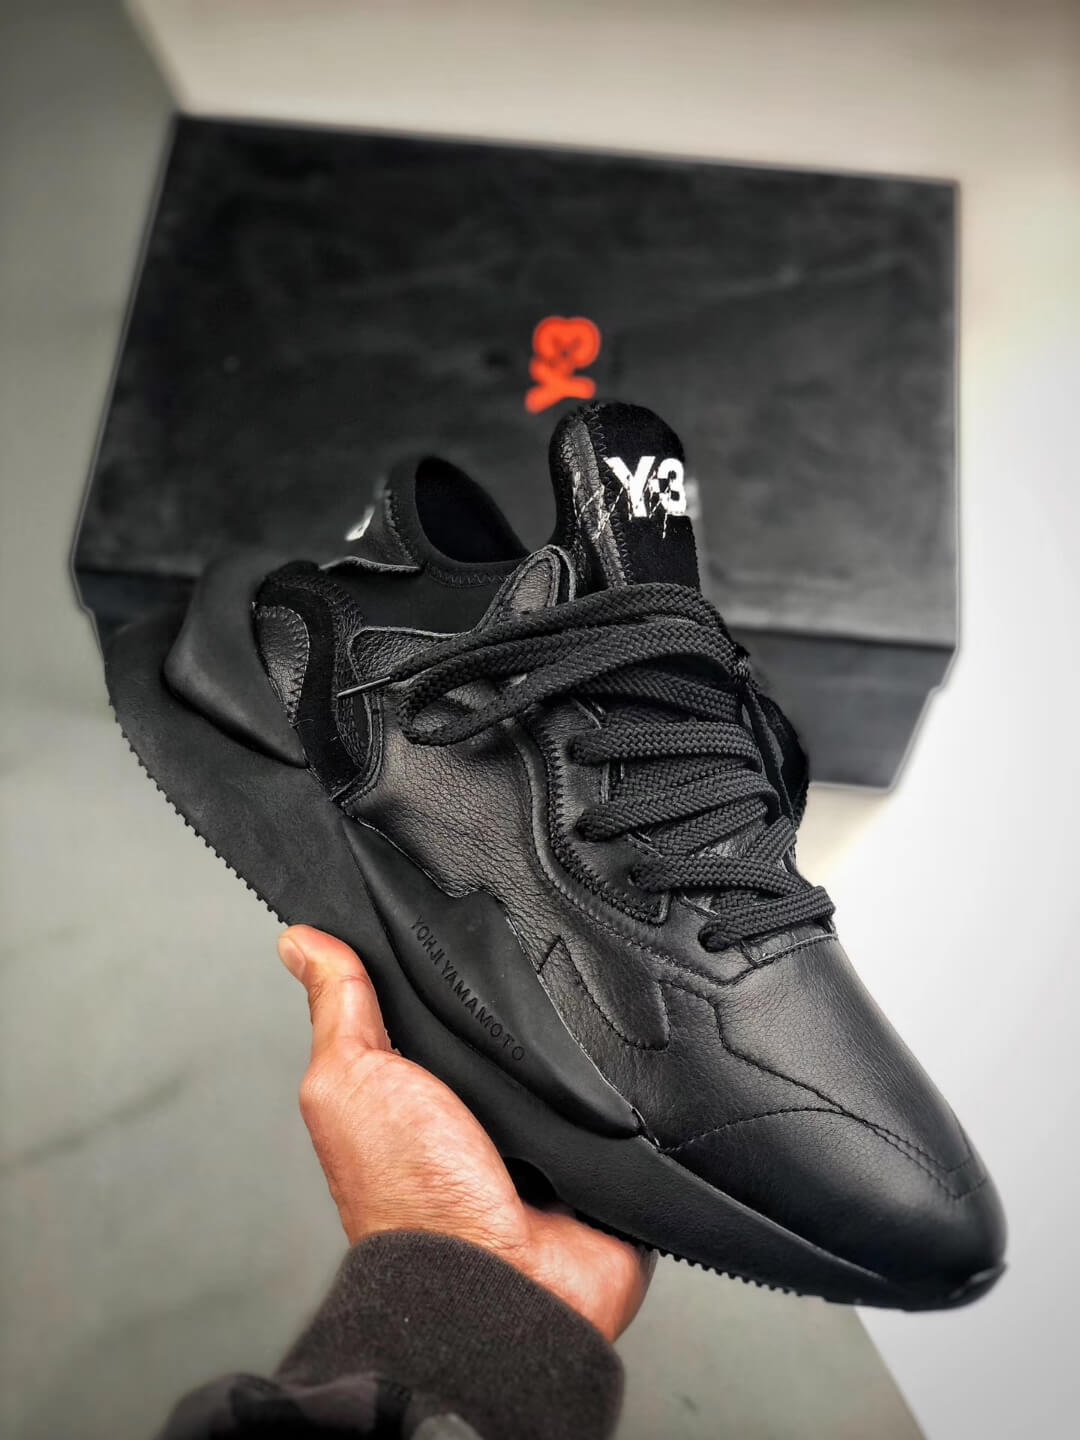 The Y-3 Kaiwa Core Black Shoes Y-3 x 